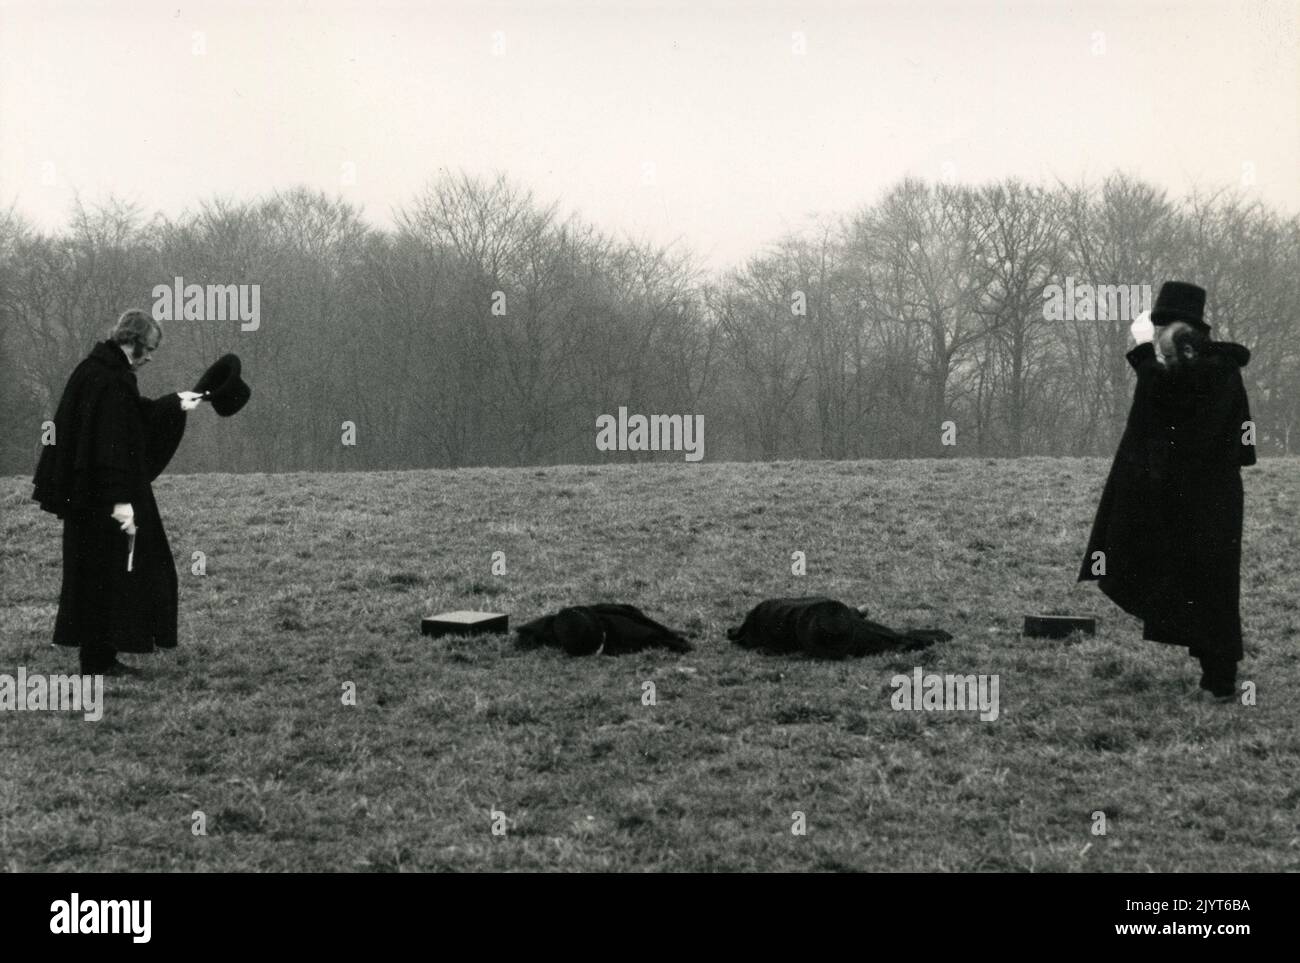 Scène duel de la série TV comédie Klimbim, Allemagne 1970s Banque D'Images